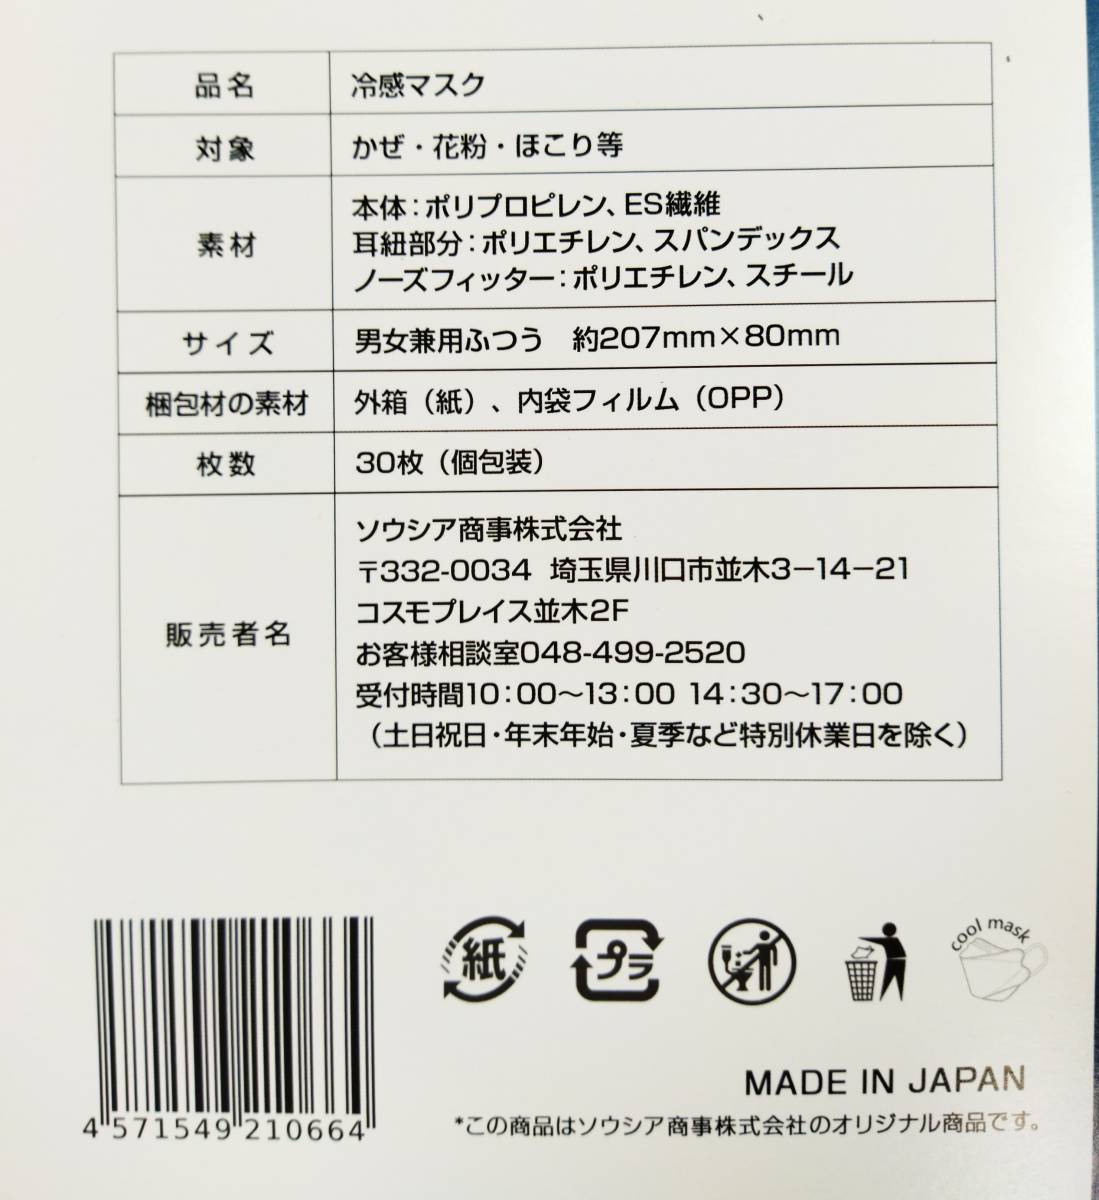 [F133]* не использовался товар * всего 540 листов нетканый материал маска продажа комплектом много 1 коробка 30 листов ввод ×18 коробка 3D цельный type сделано в Японии охлаждающий маска SOUSIA хранение товар 